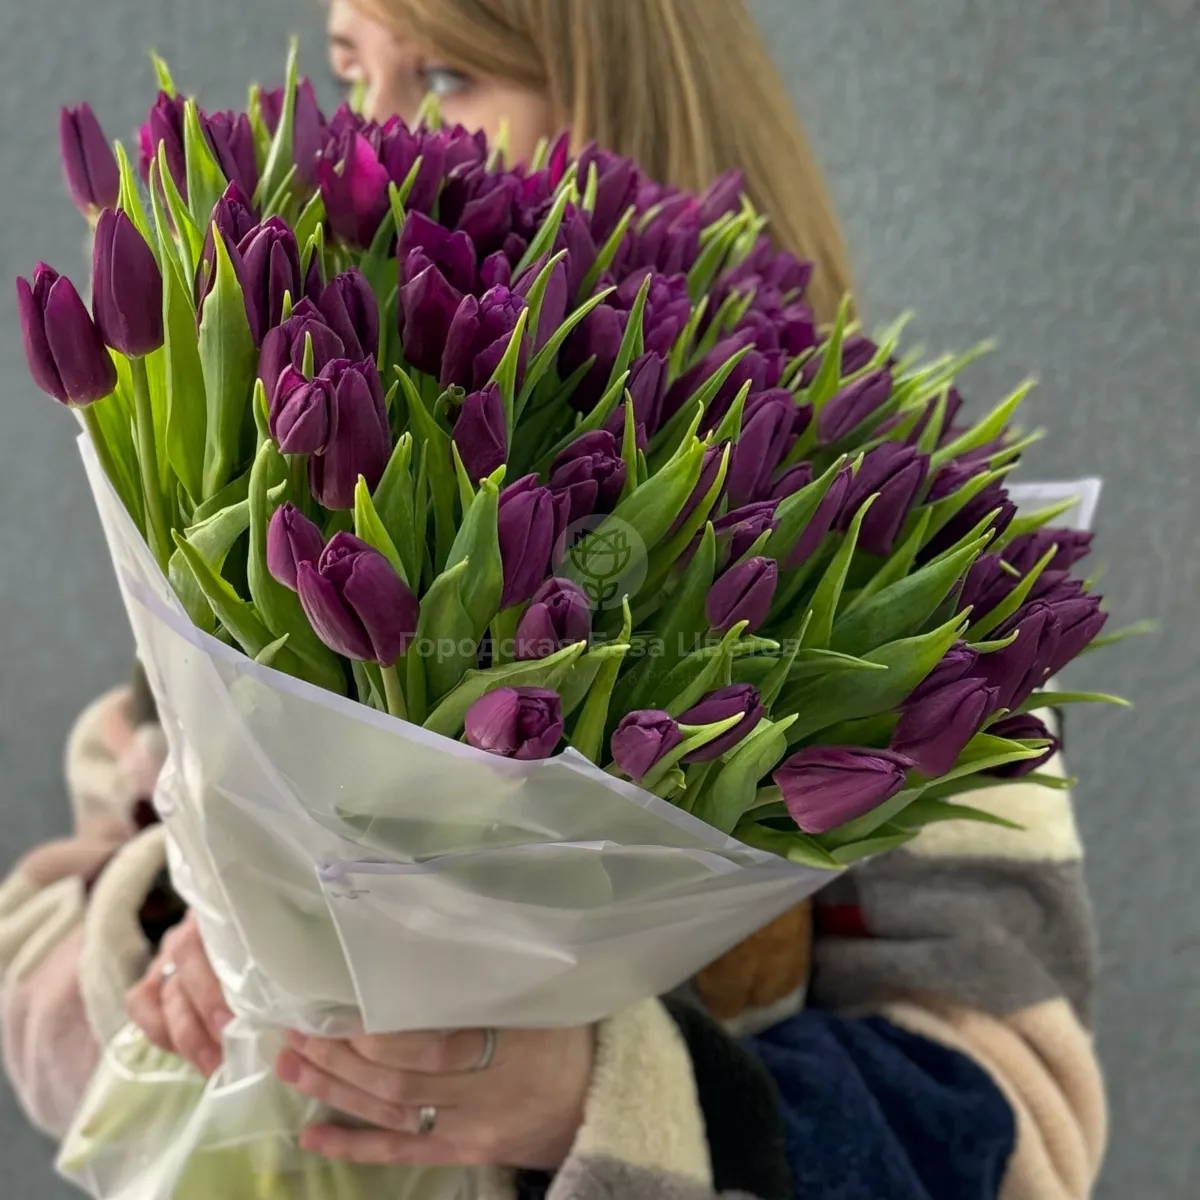 91 бордово-фиолетовый тюльпан